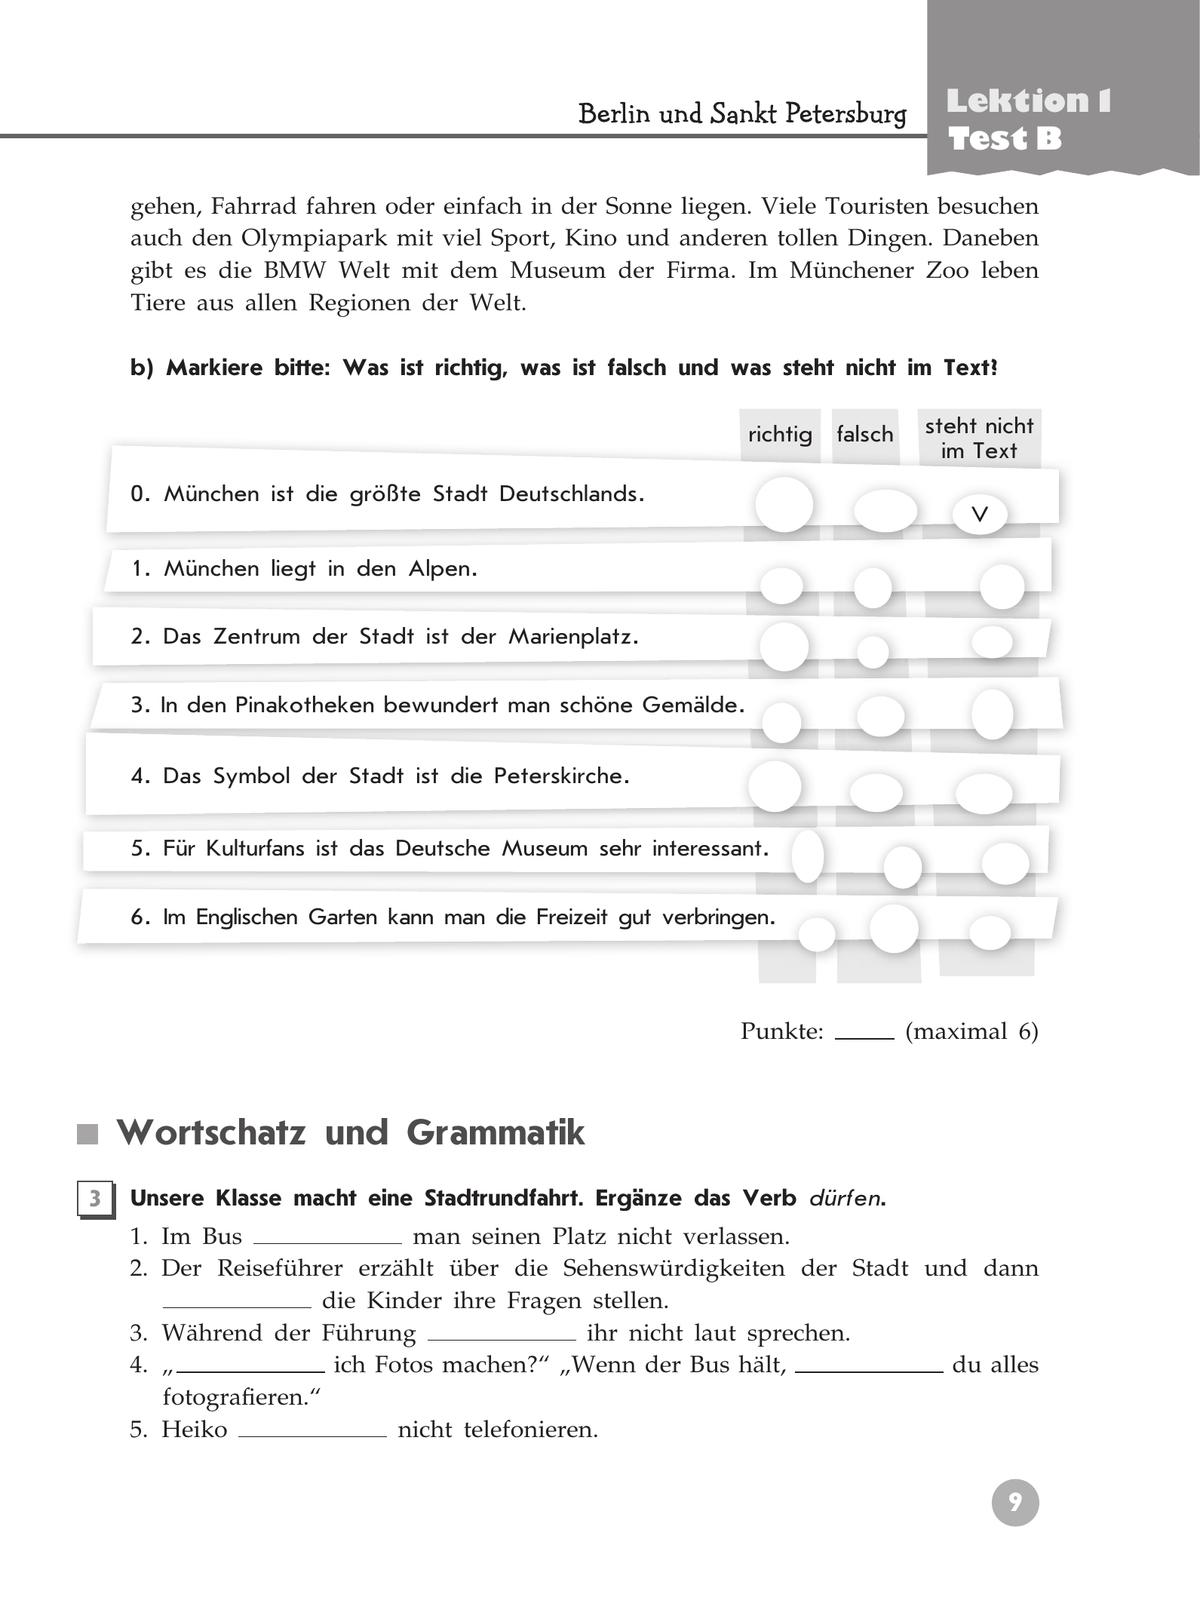 Немецкий язык. Контрольные задания. 6 класс 2